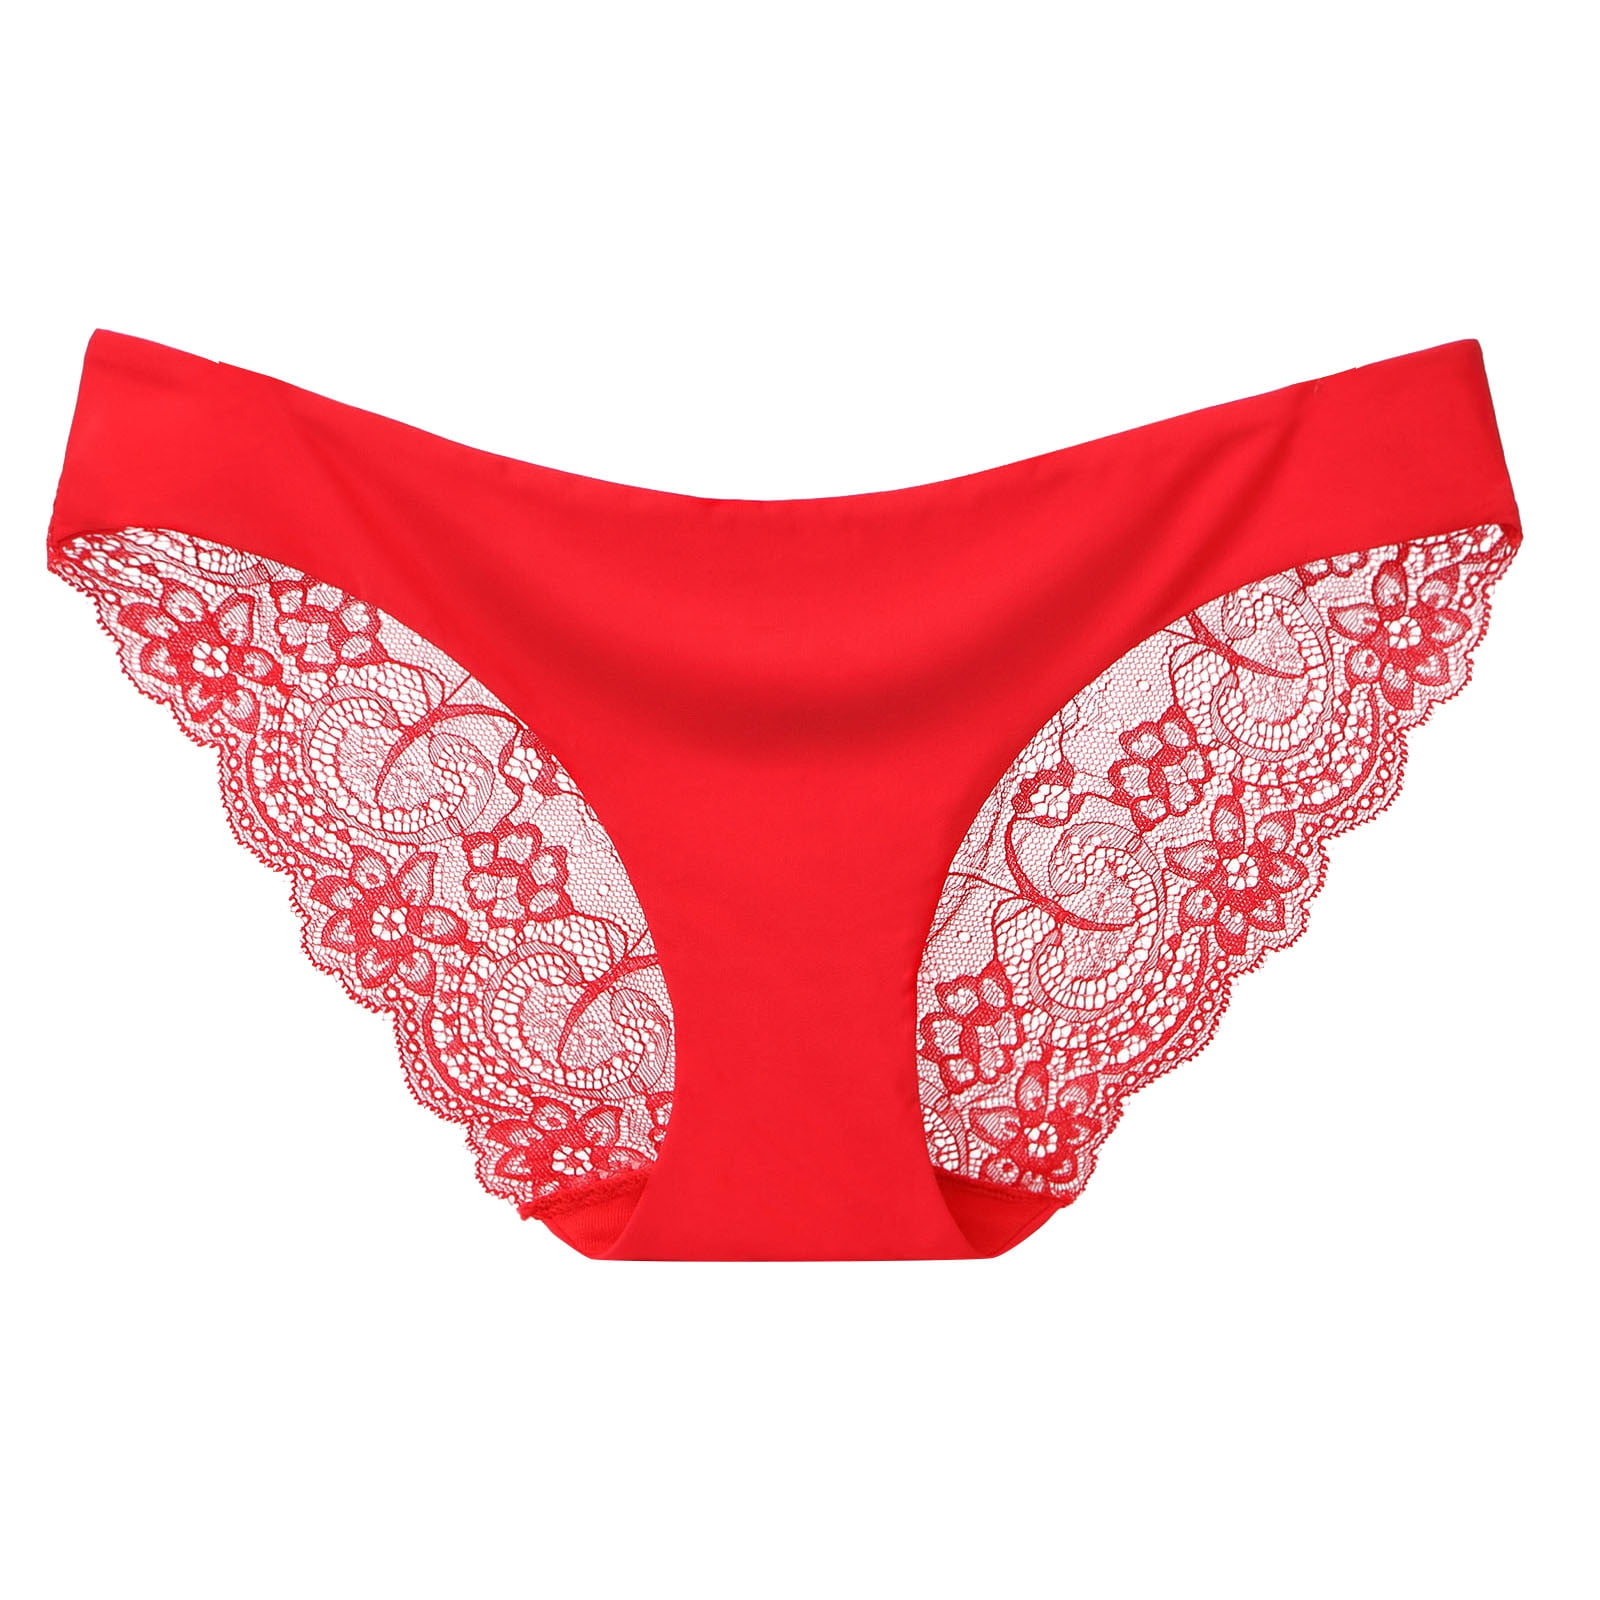 adviicd Lingerie for Women Women's 362° Stretch Underwear Red